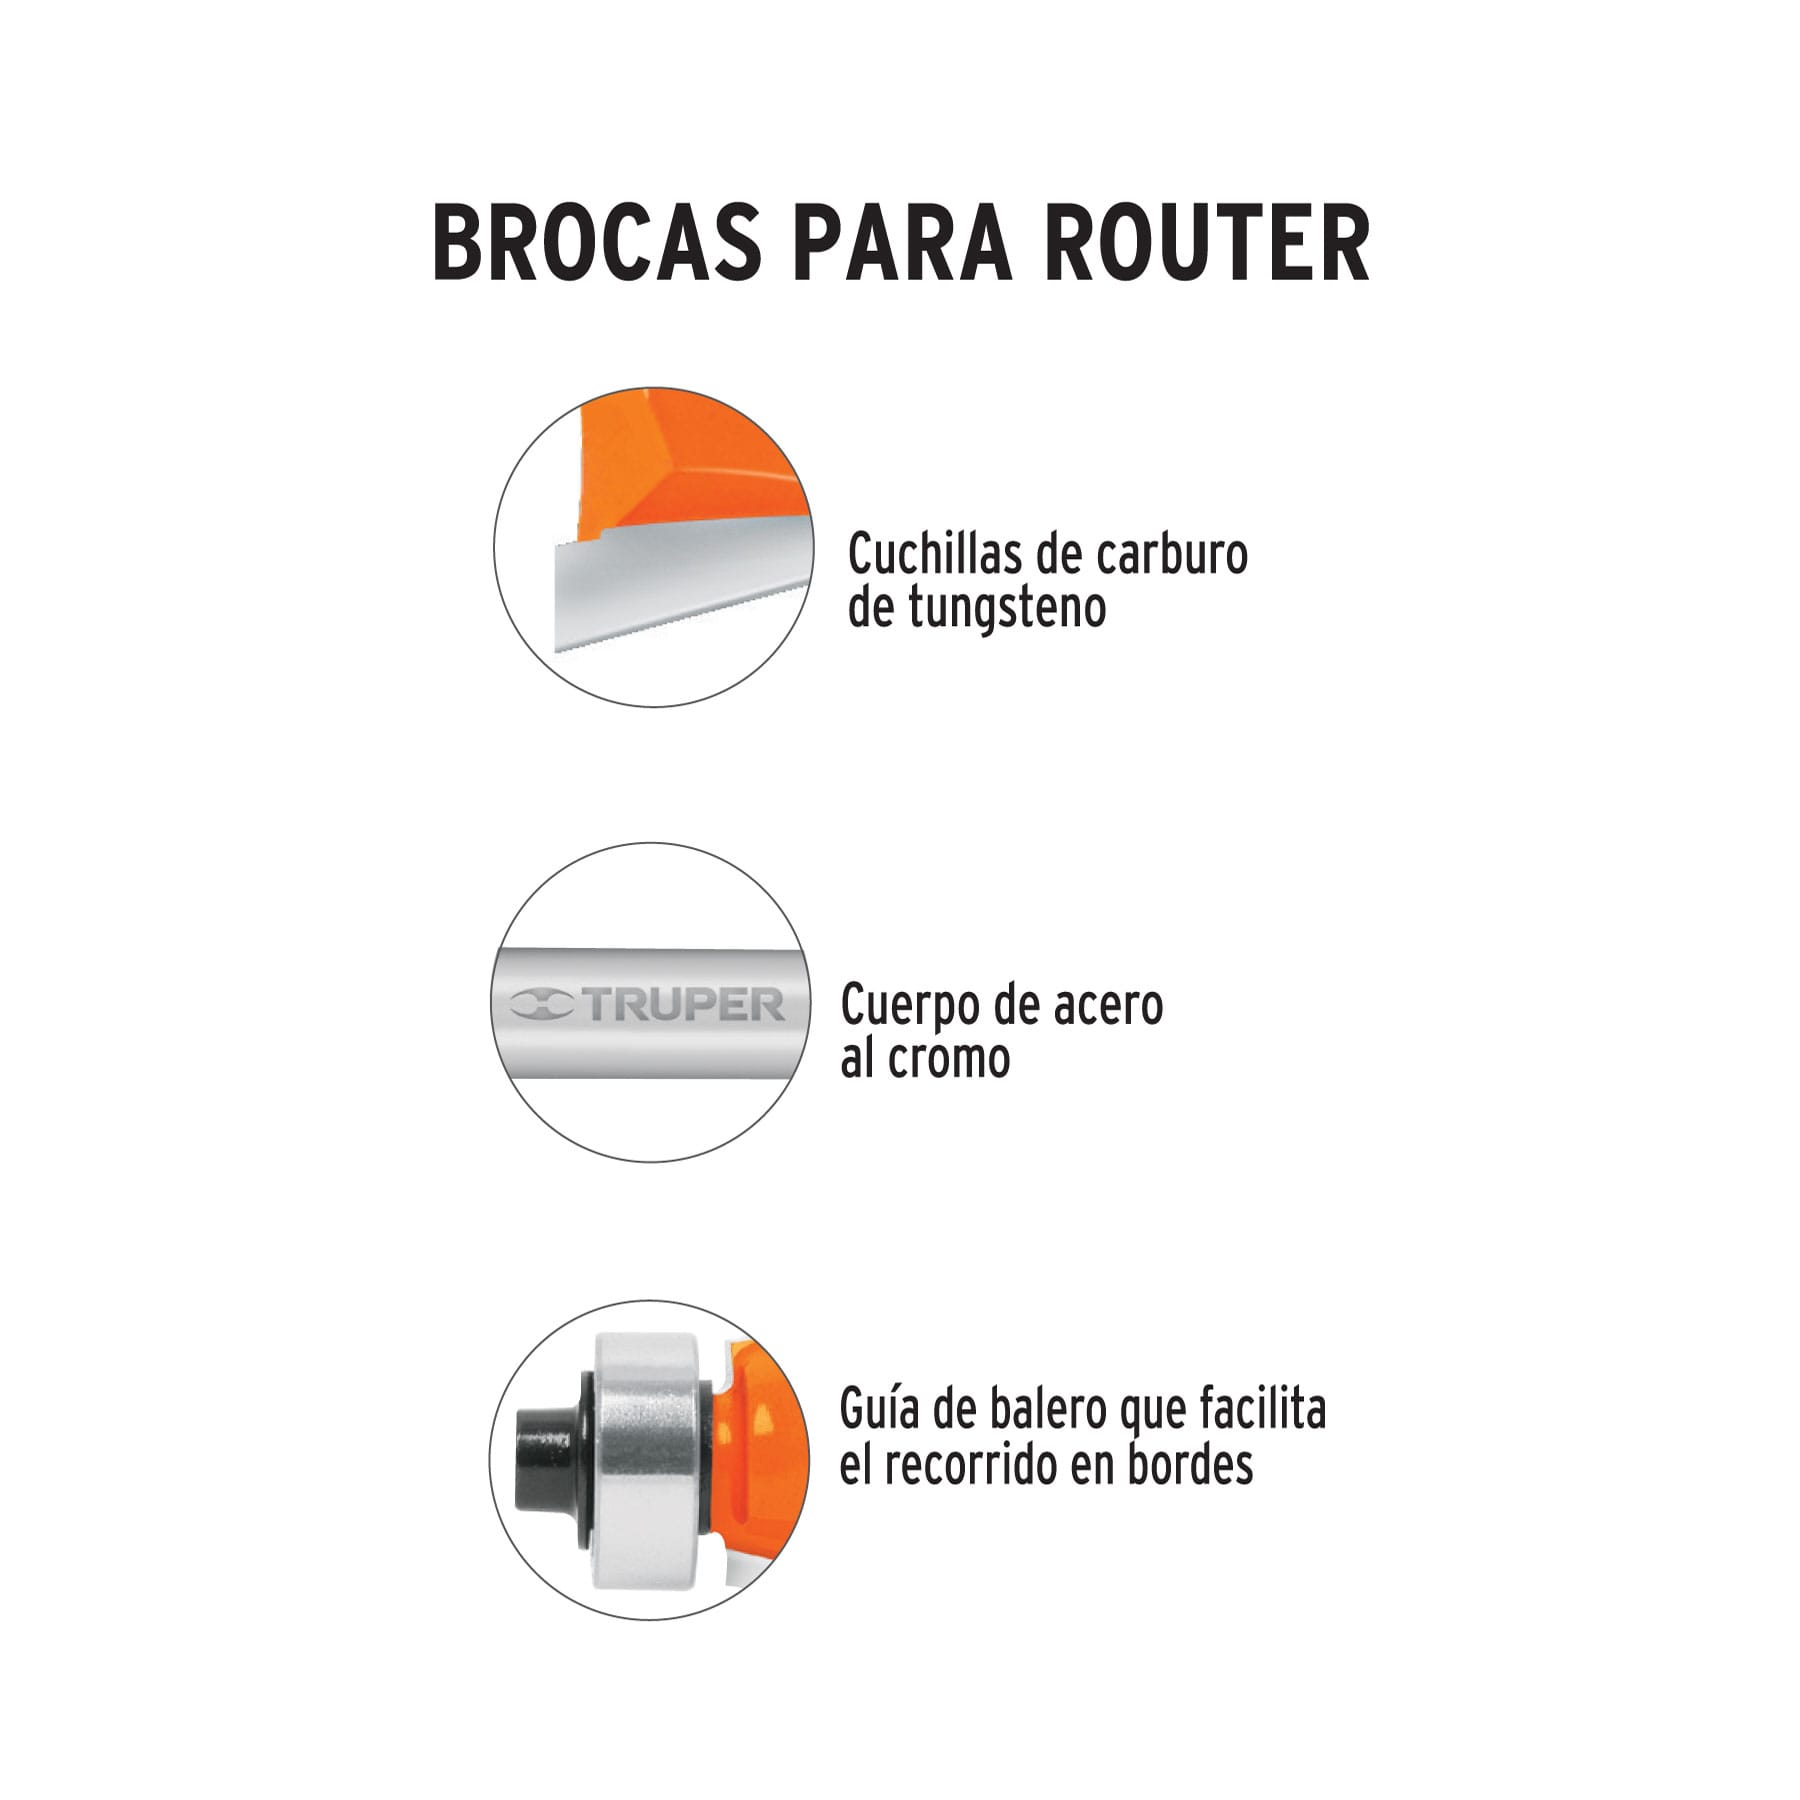 Broca Para Router, Moldura Clásica, 1-1/8" Con Balero, Truper